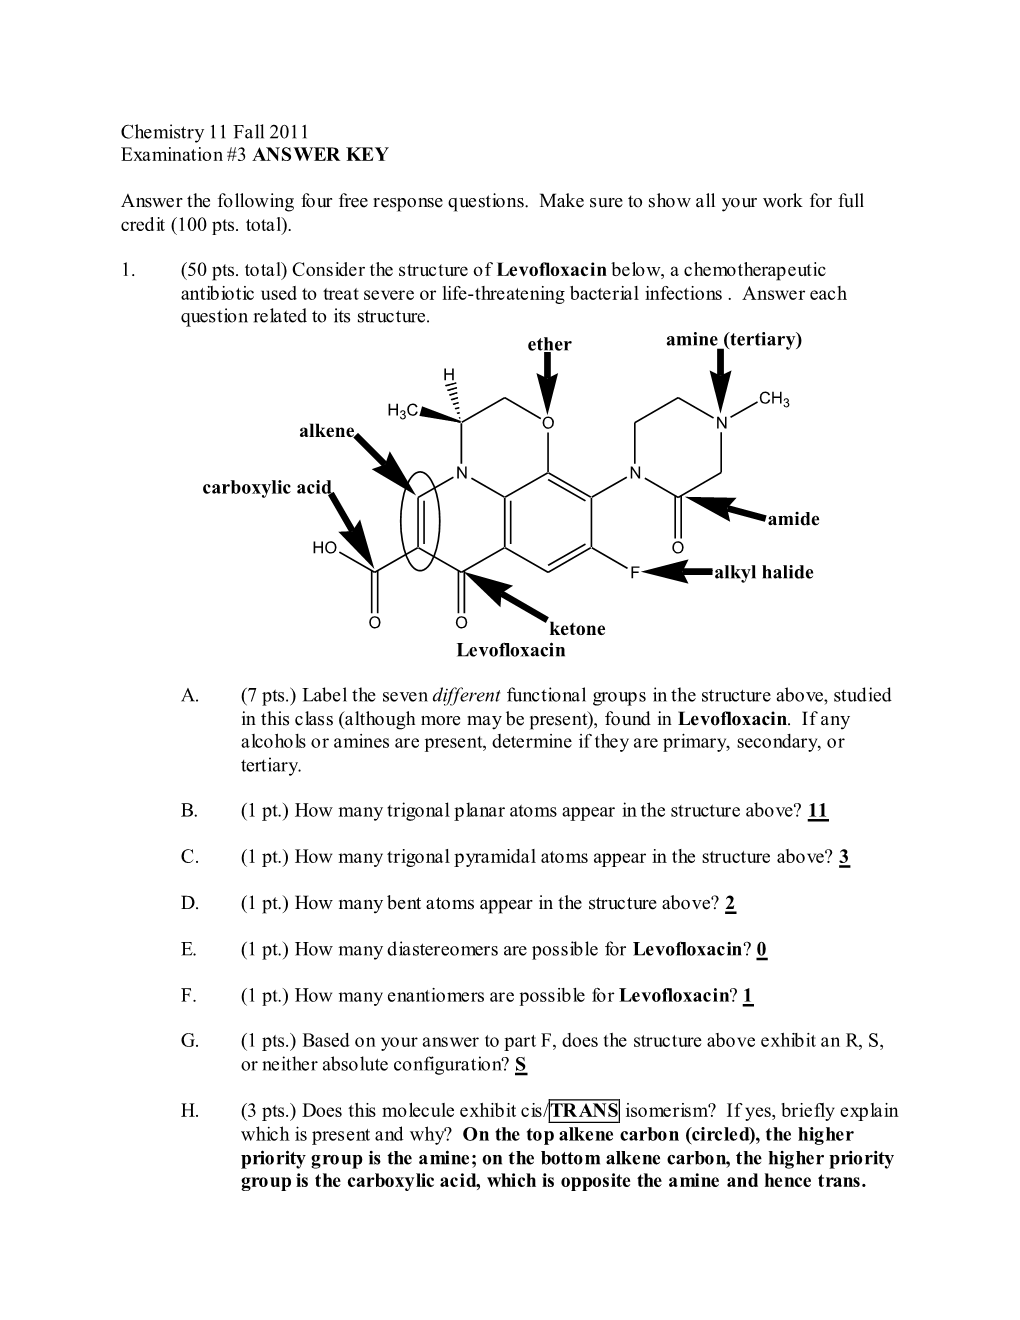 Chemistry 11 Fall 2011 Examination #3 ANSWER KEY